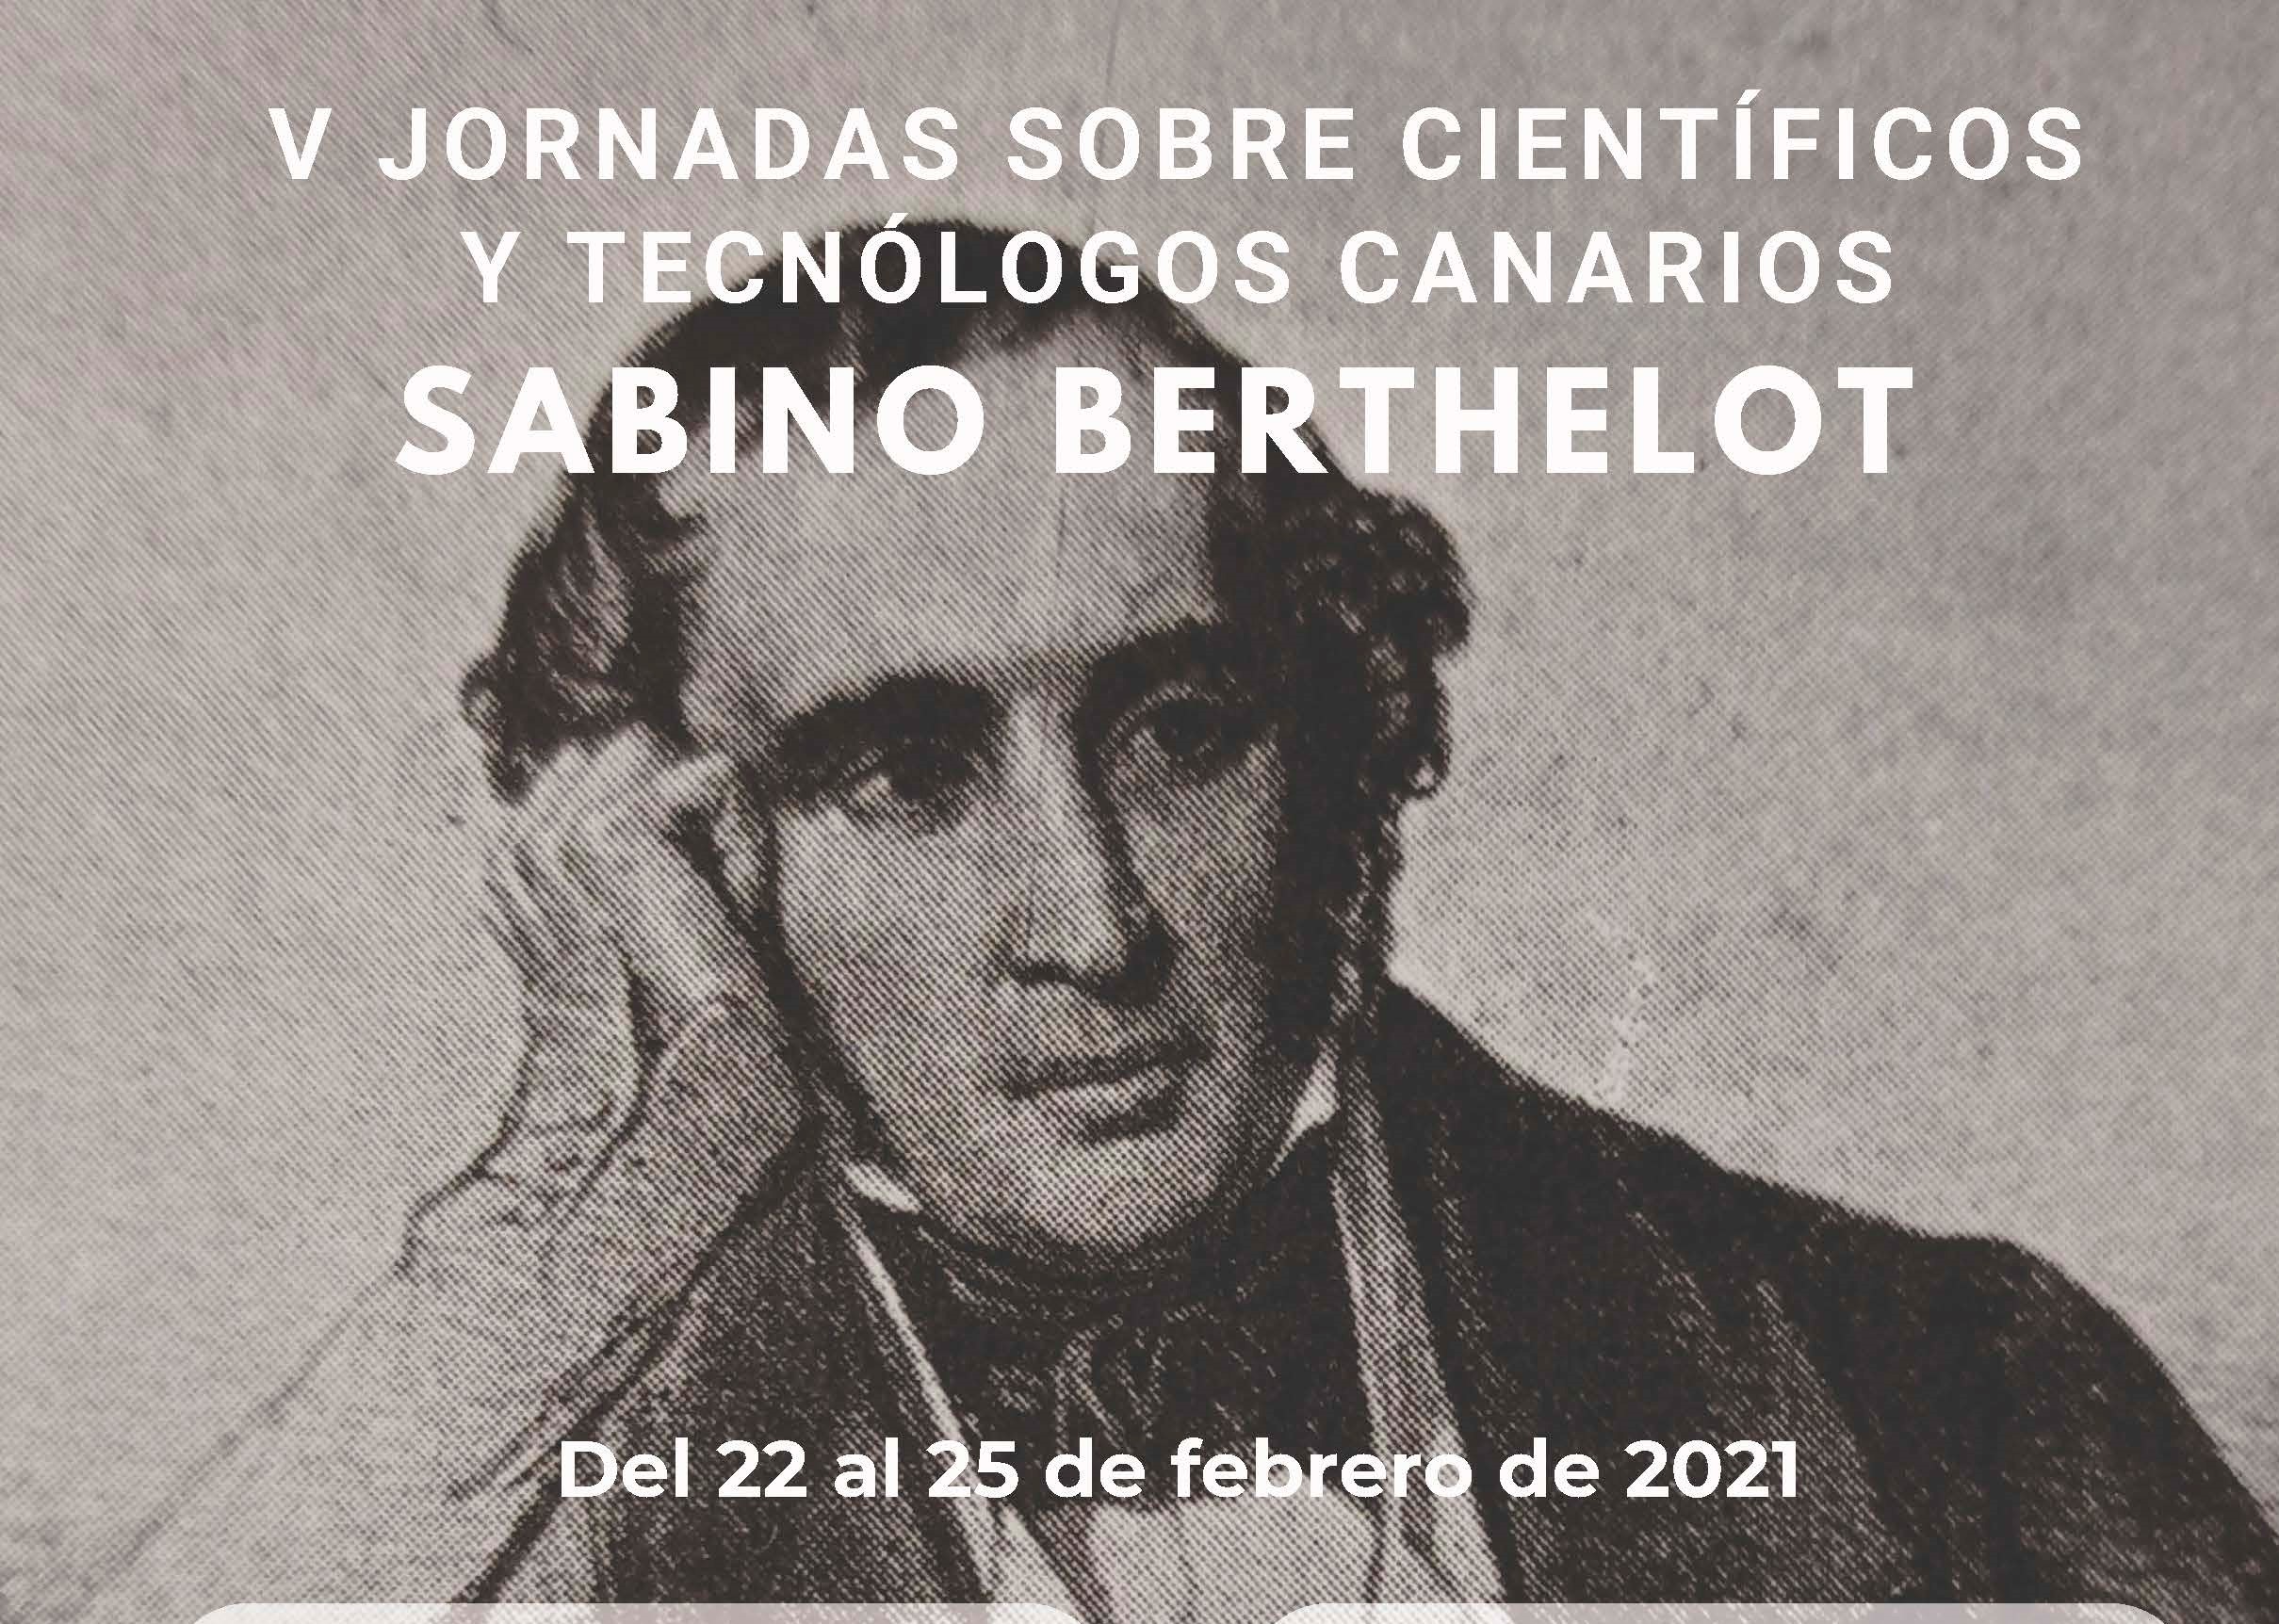 V Jornadas sobre Científicos y Tecnólogos Canarios, dedicadas a Sabino Berthelot